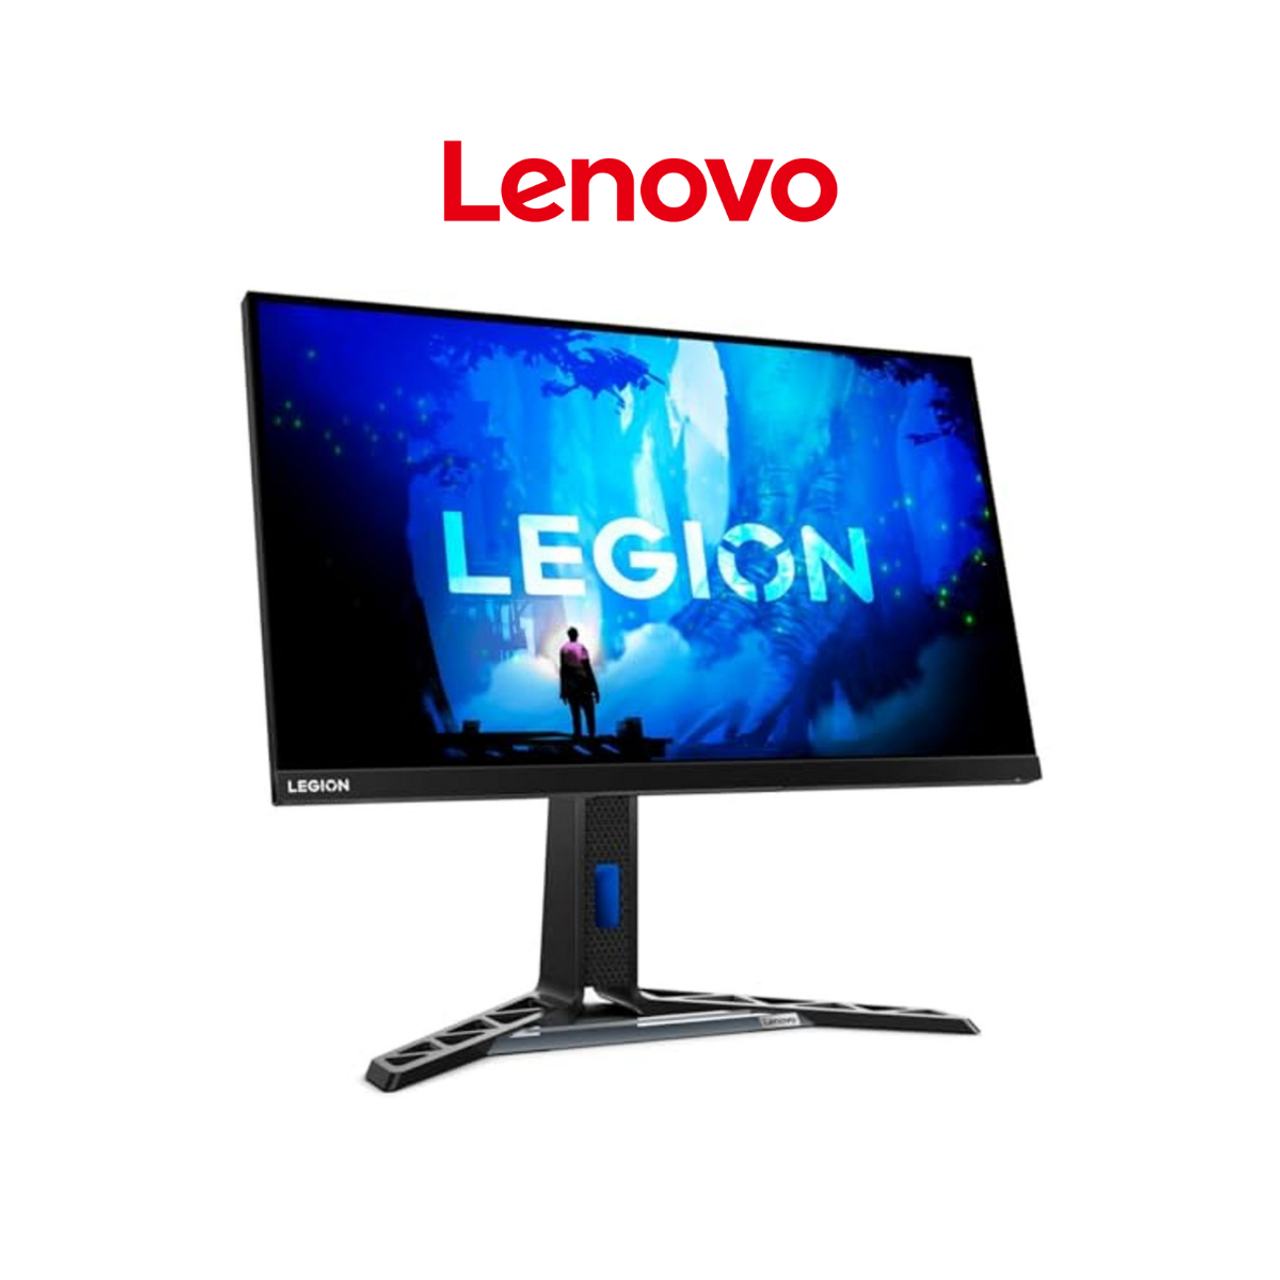 Lenovo Legion Y27q-30 27“ QHD Monitor product image